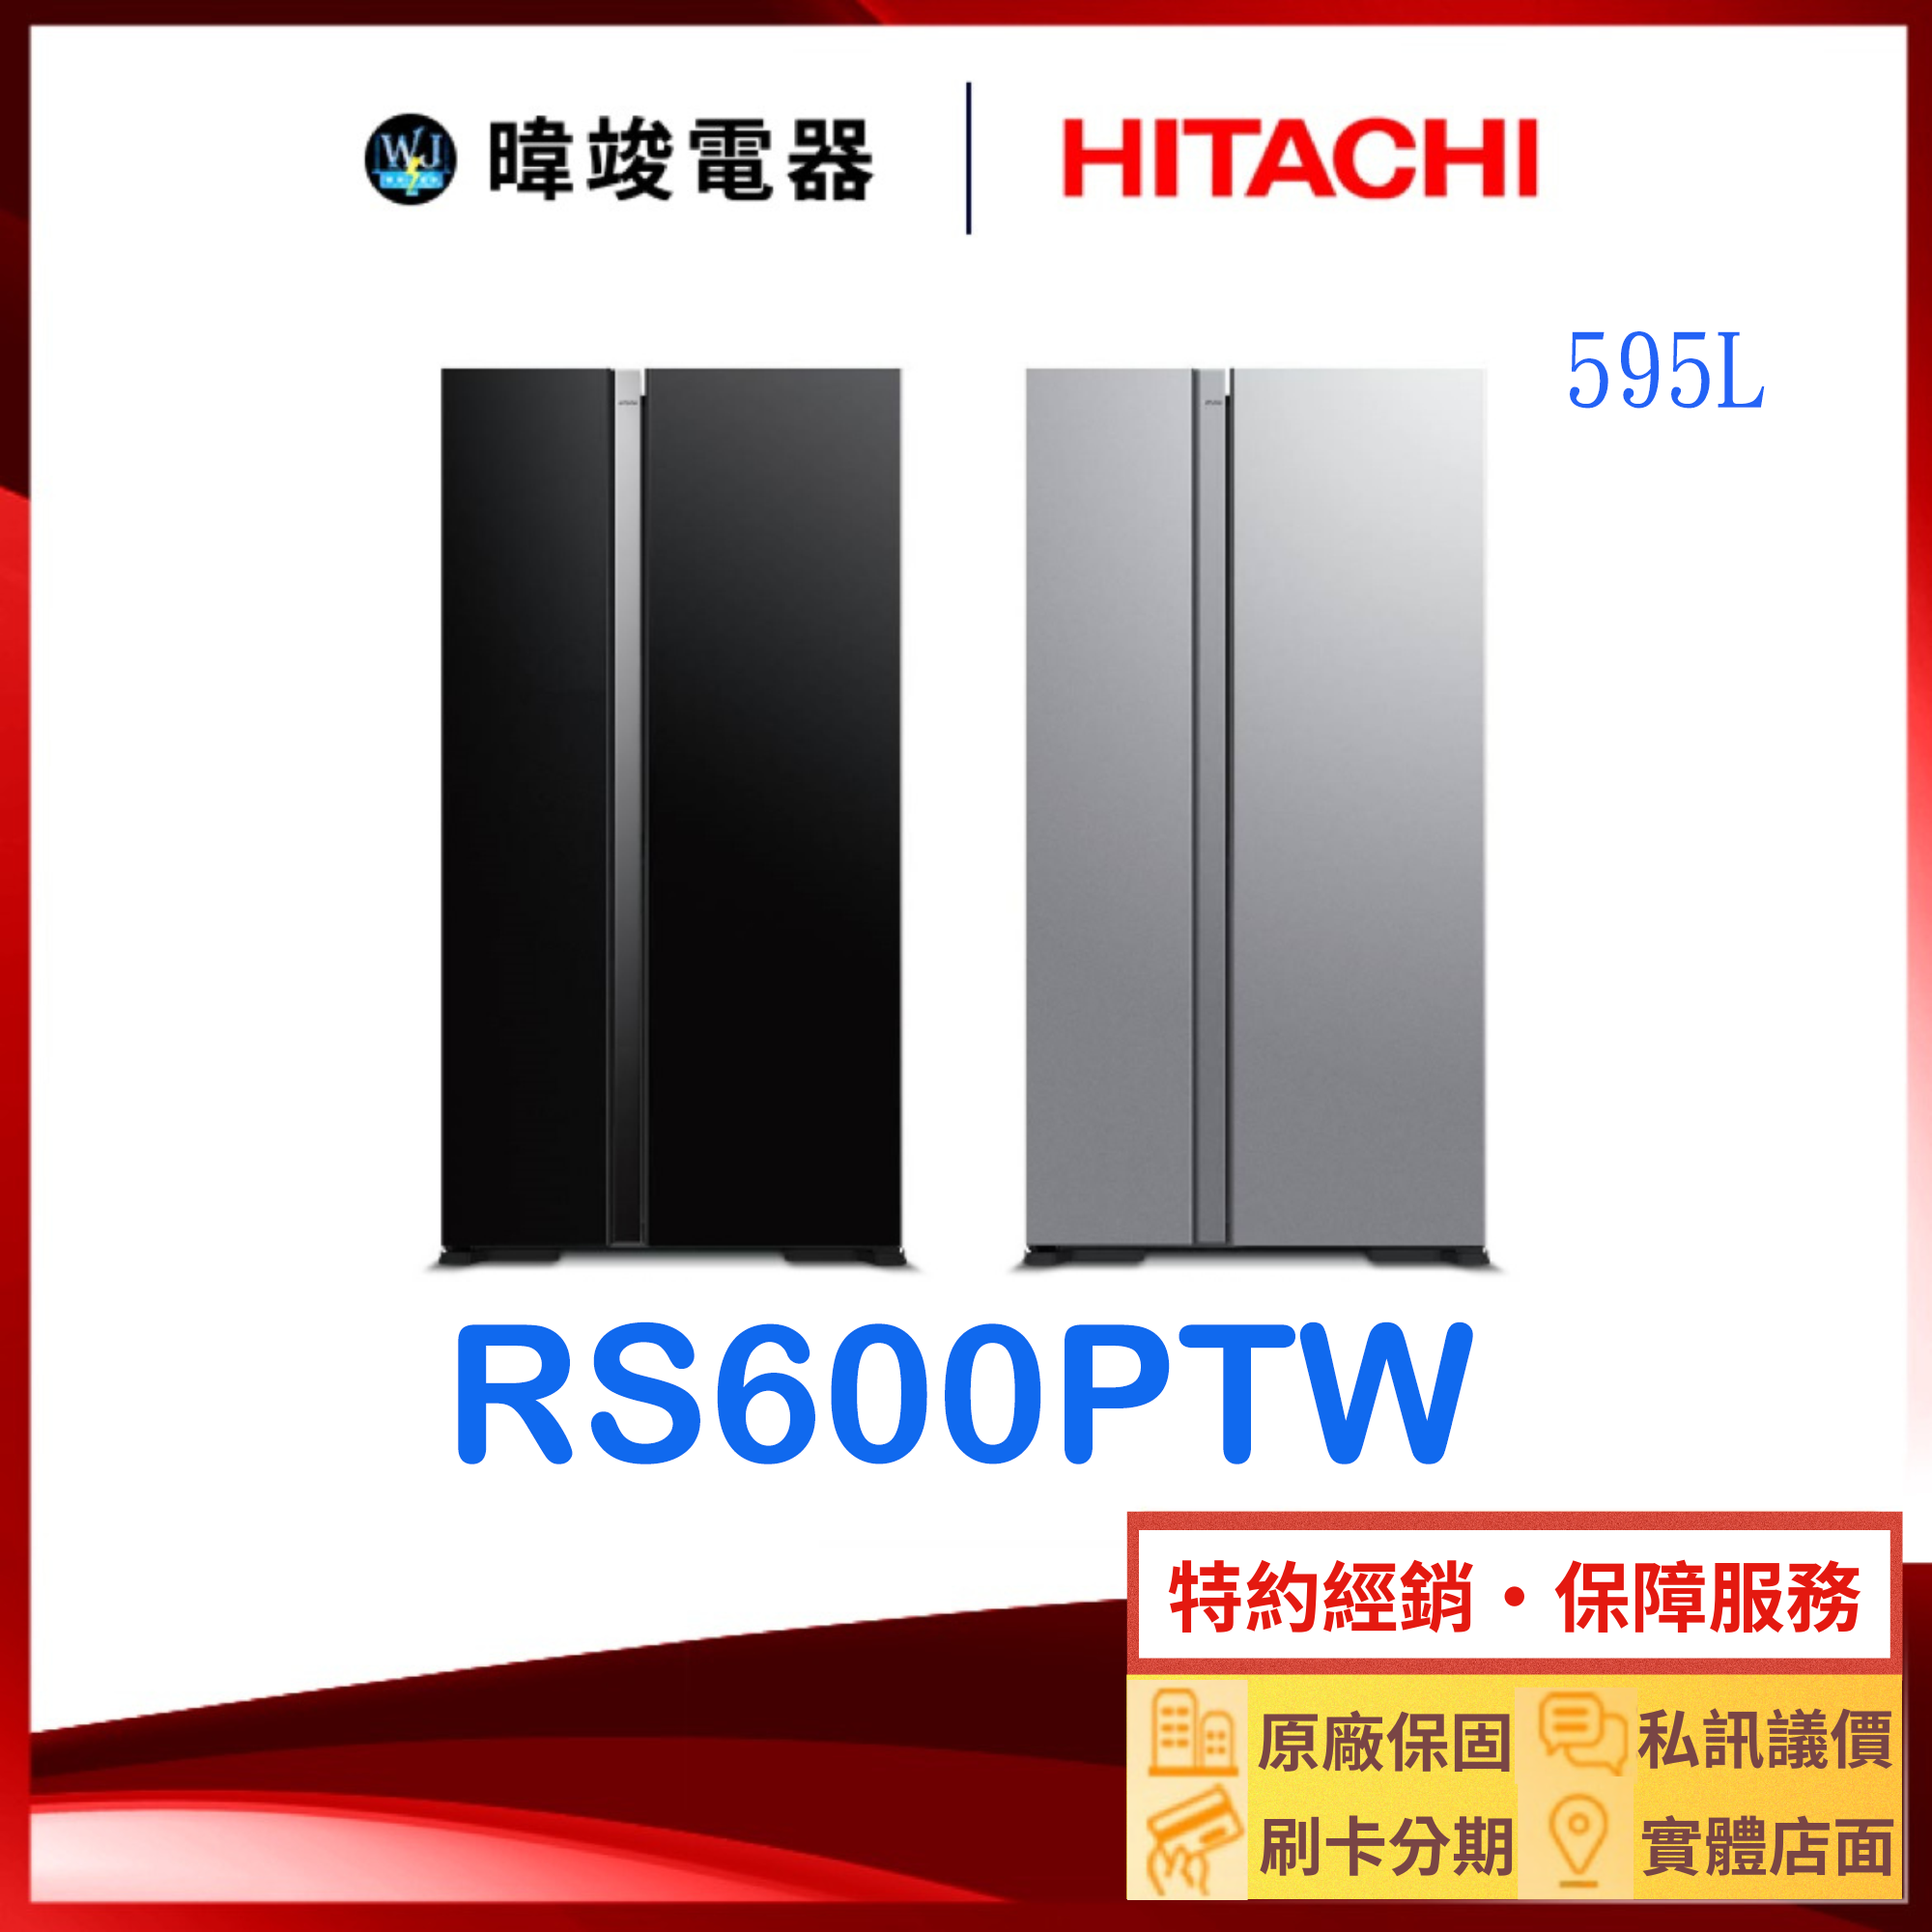 現貨*原廠保固【獨家折扣碼】HITACHI 日立 RS600PTW 對開冰箱 R-S600PTW 大容量 雙門 電冰箱